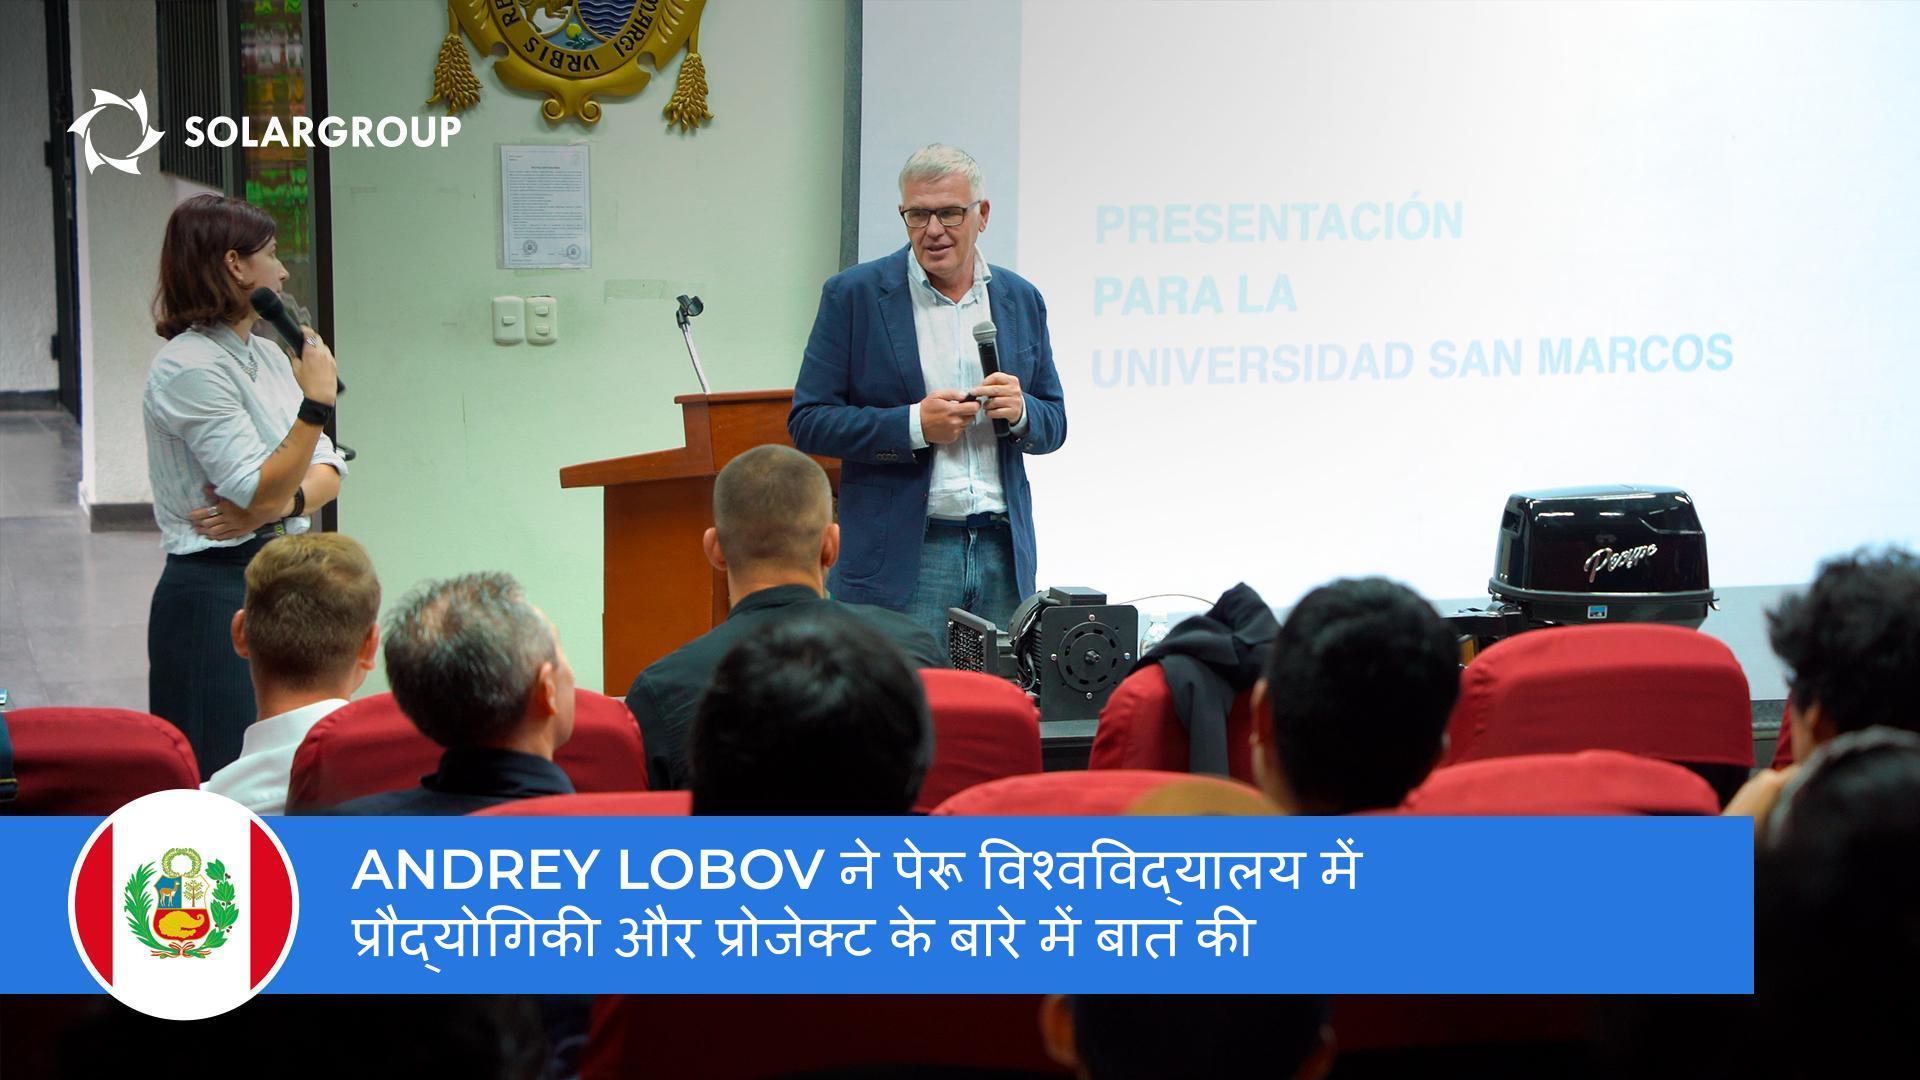 Andrey Lobov ने सैन मार्कोस यूनिवर्सिटी में छात्रों और प्रोफ़ेसरों को प्रौद्योगिकी और प्रोजेक्ट के बारे में बताया